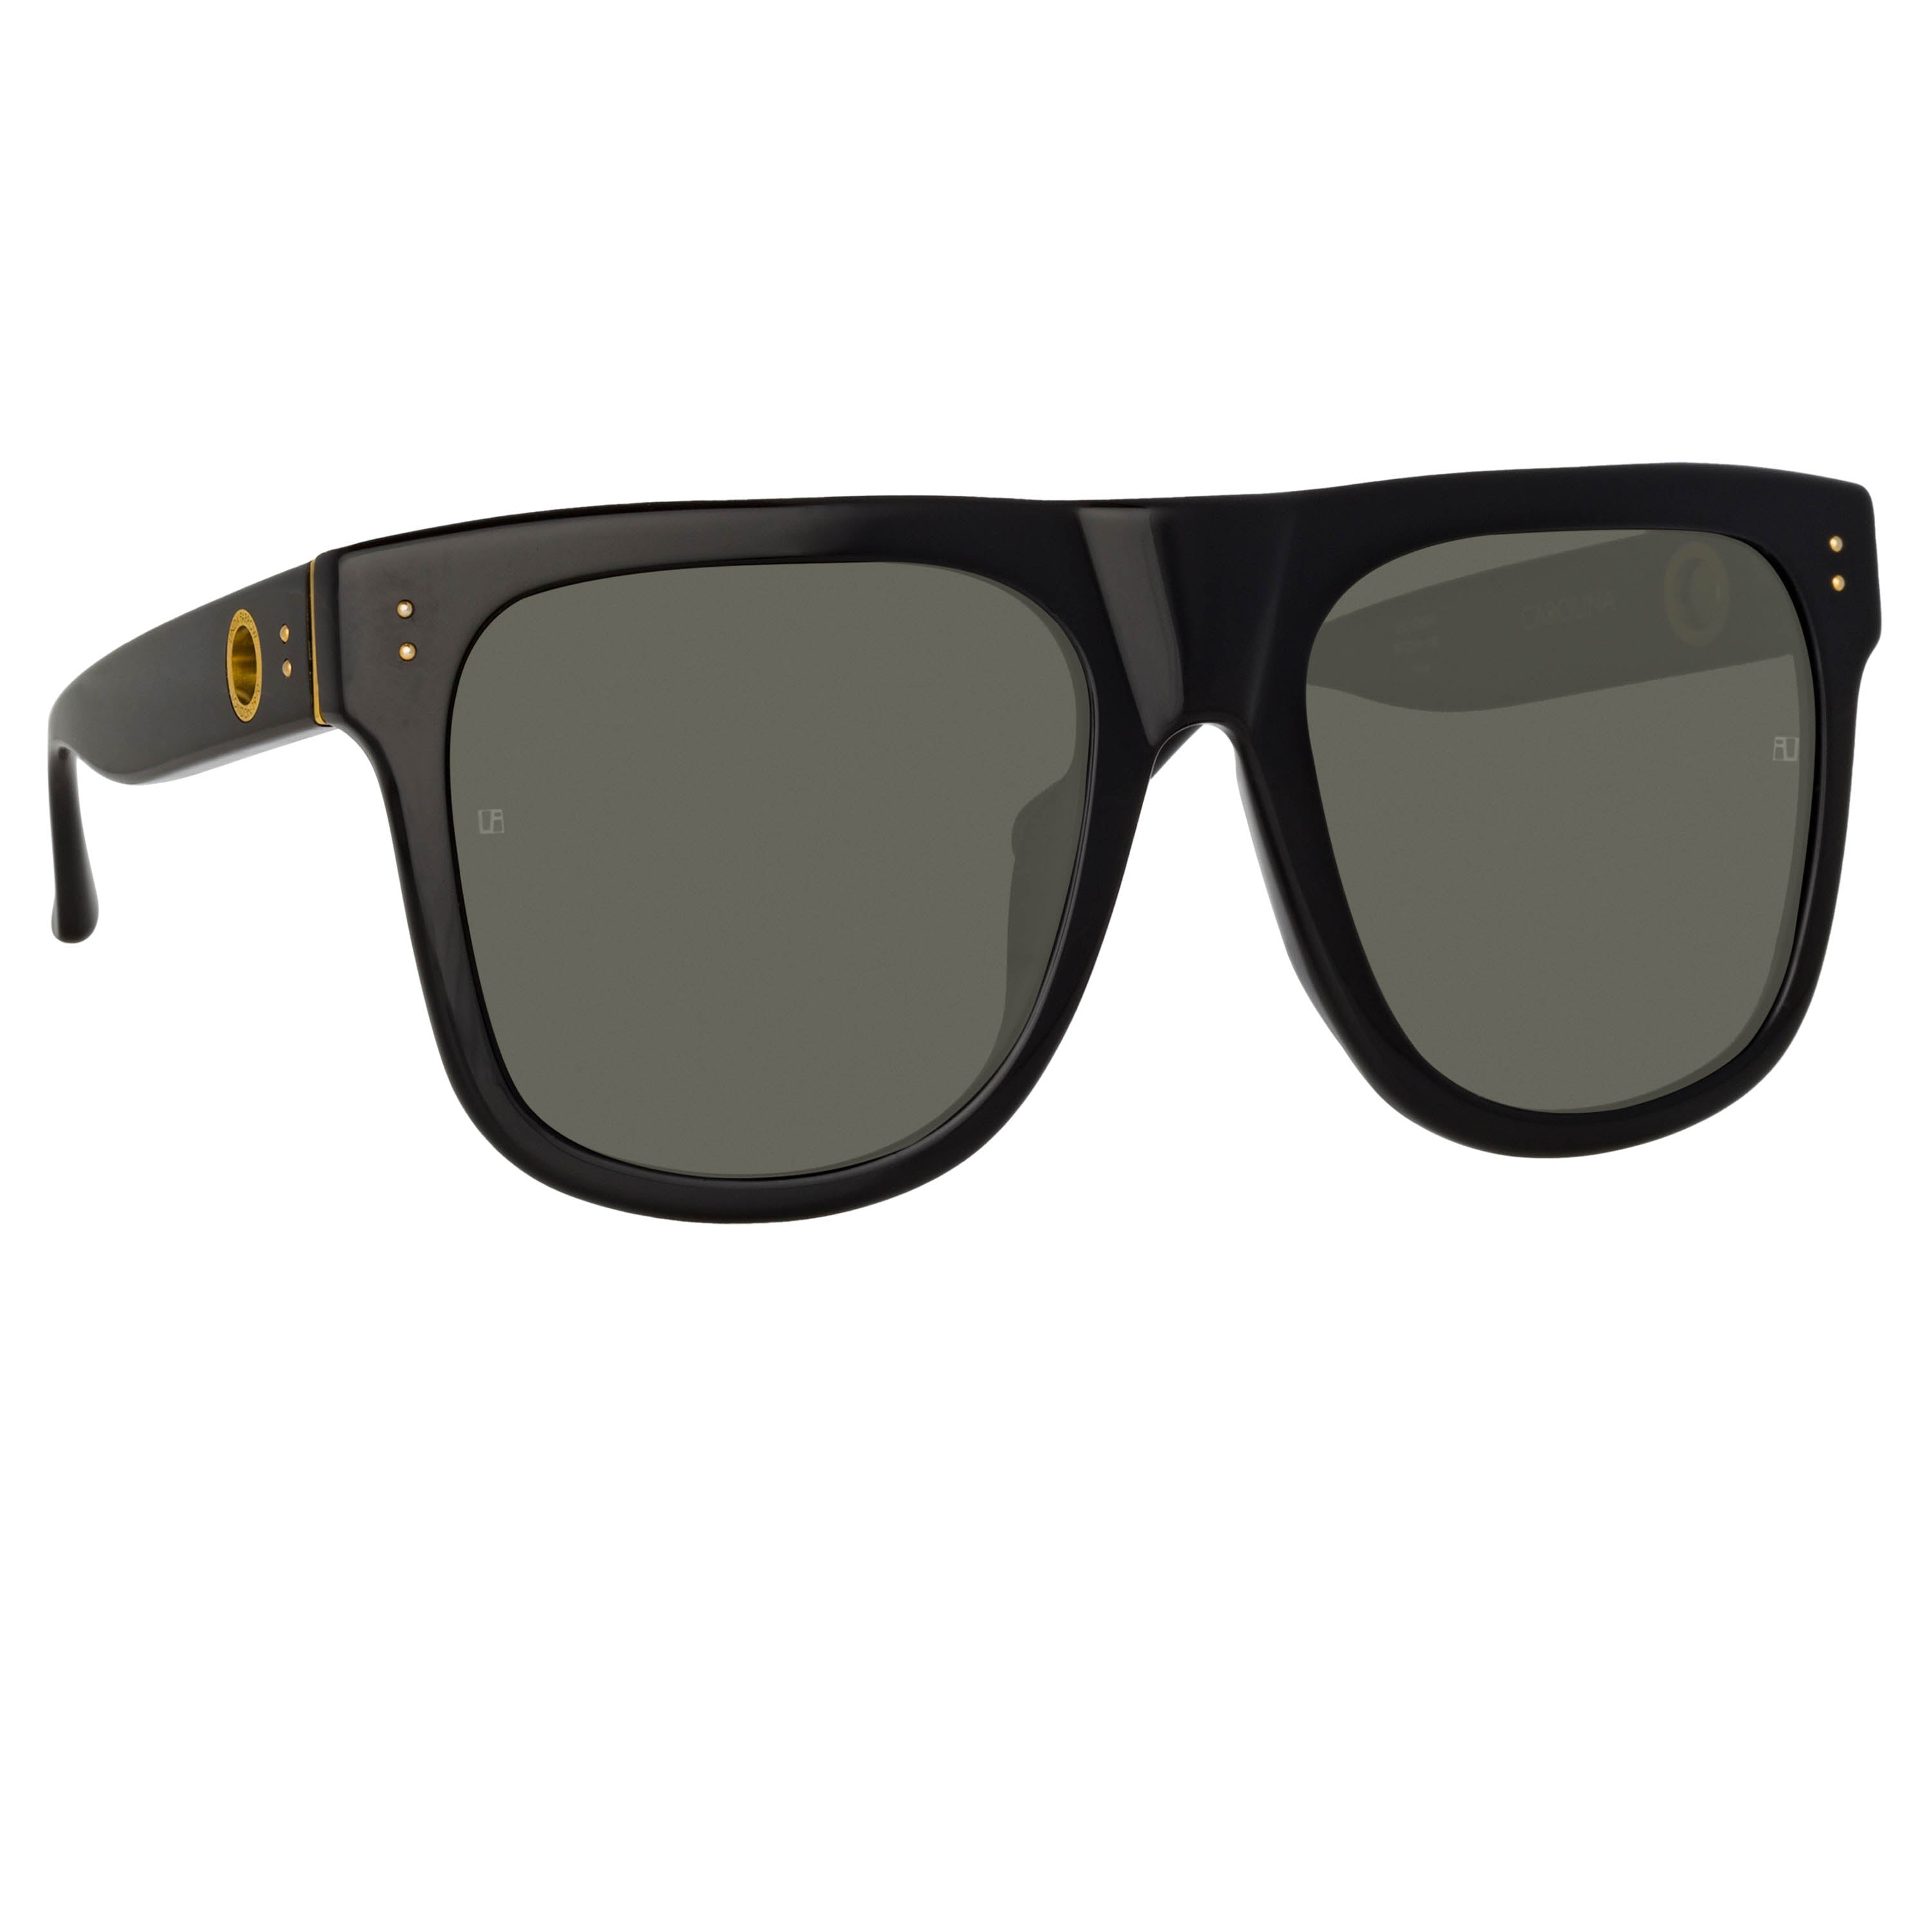 Carolina Flat Top Sunglasses in Black by LINDA FARROW – LINDA FARROW (INT'L)